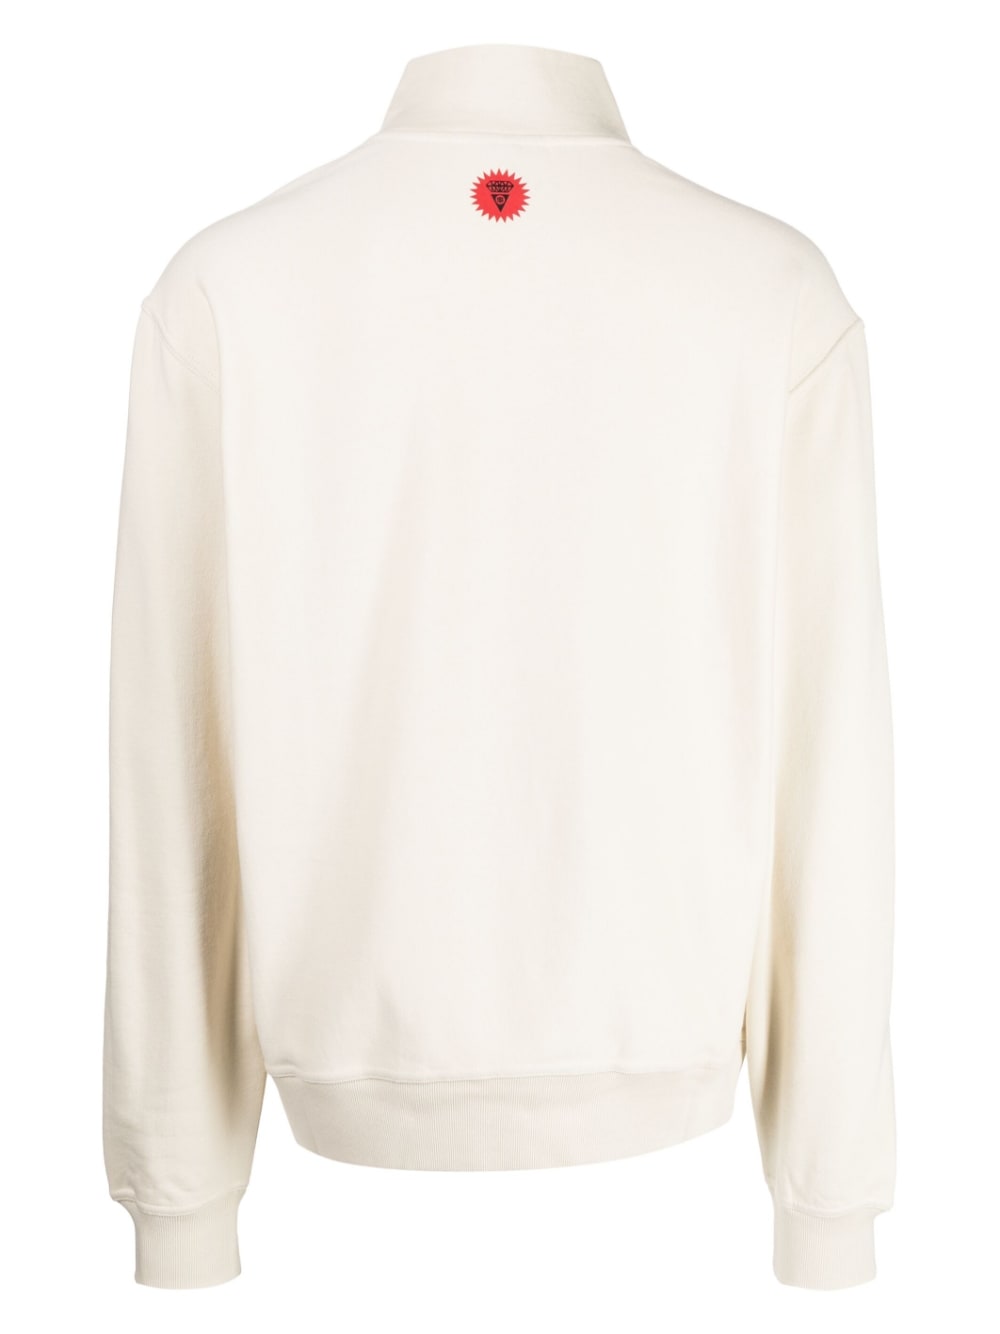 Shop Icecream Embroidered-logo Cotton Sweatshirt